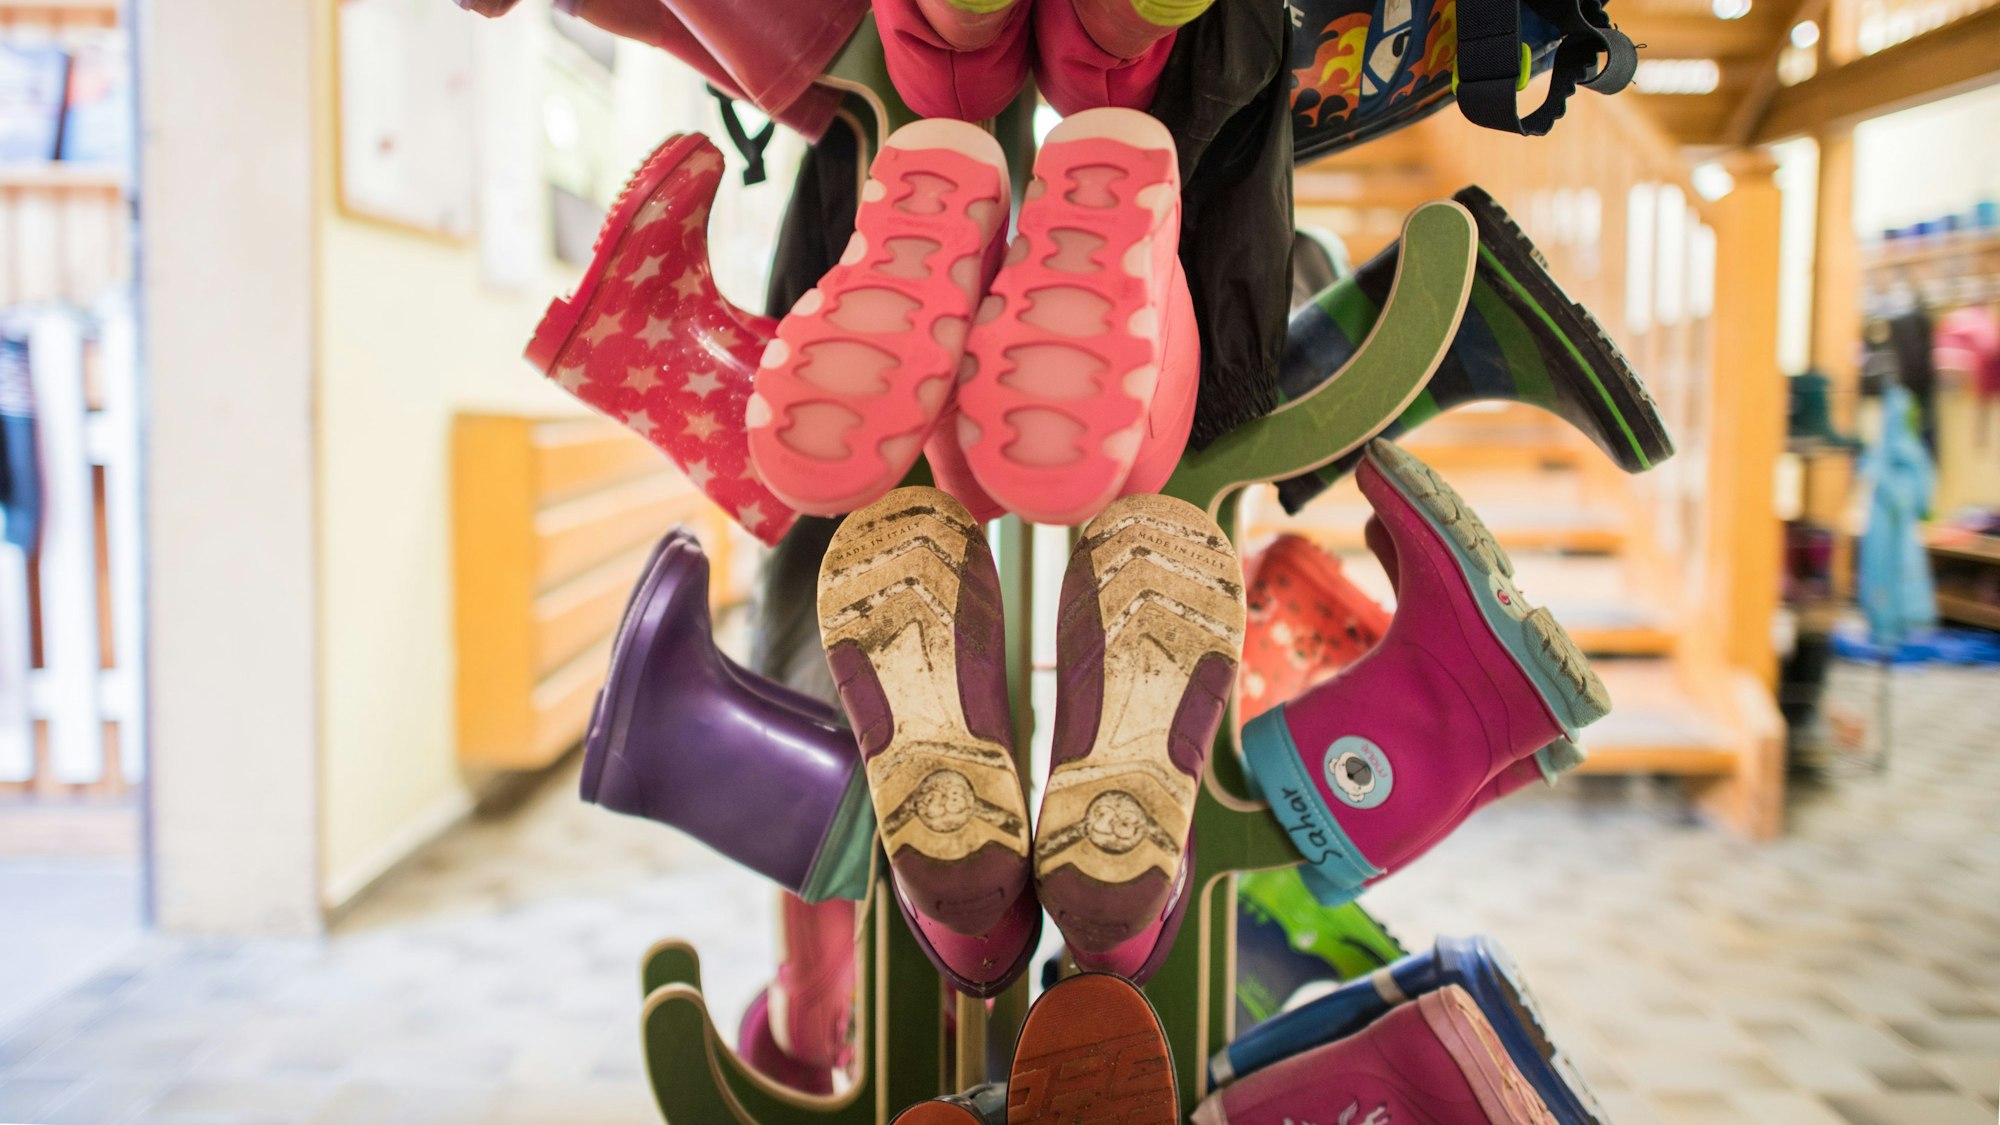 Gummistiefel für Kinder sind an einer Garderobe in einer Kindertagesstätte zu sehen.